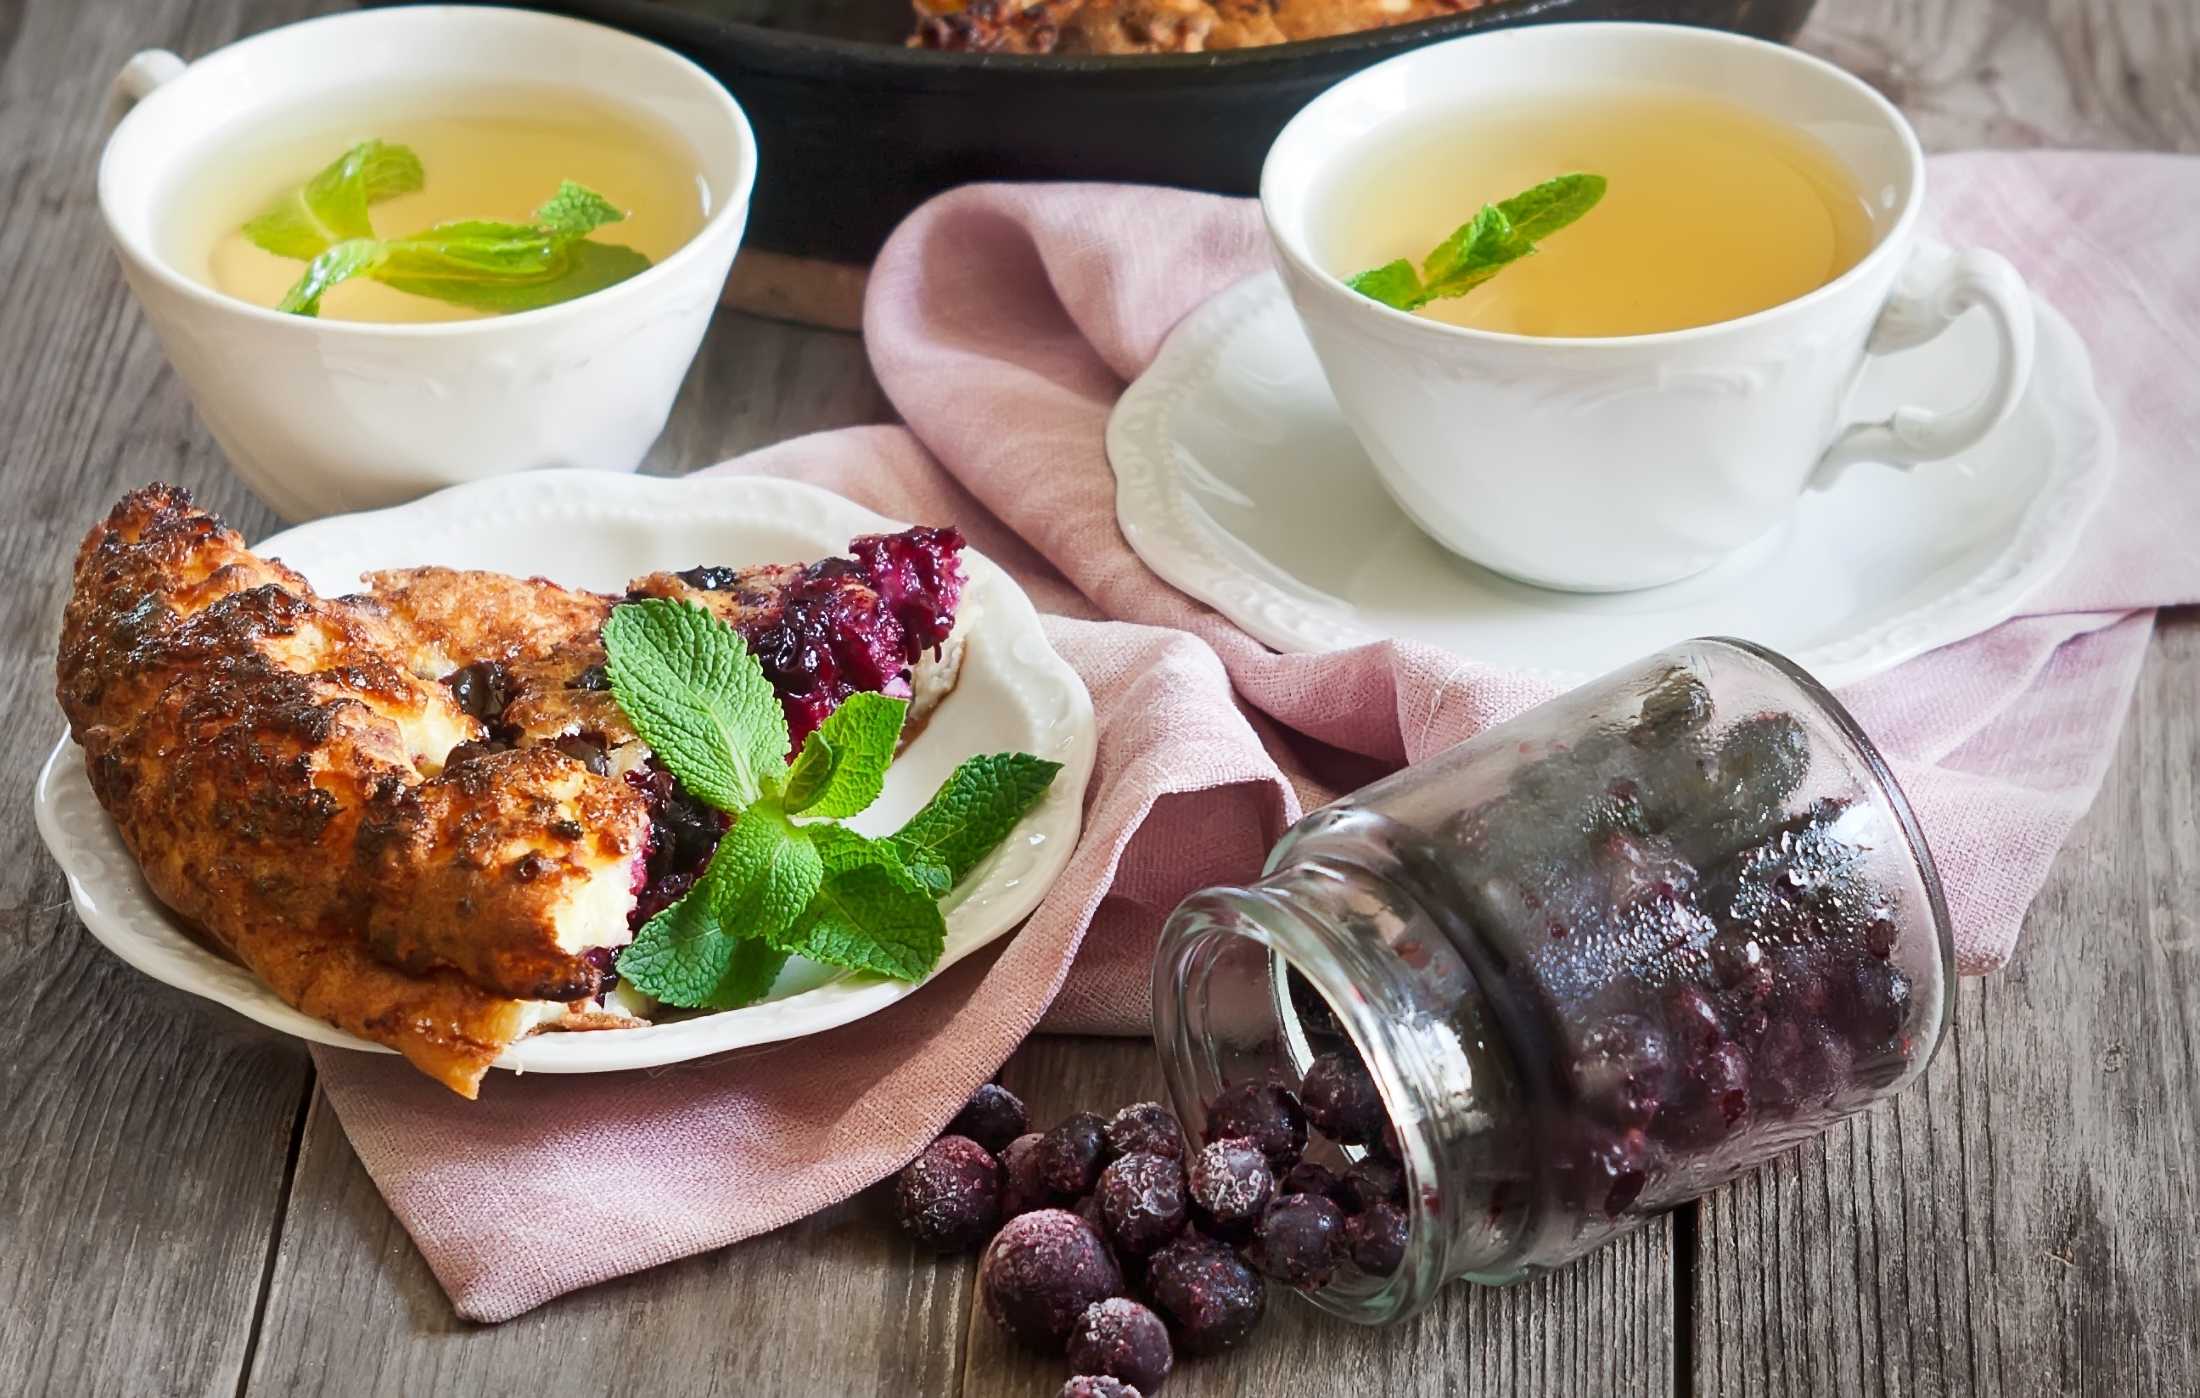 Облепиховый чай – семь рецептов полезного чая из чудесной ягоды облепихи